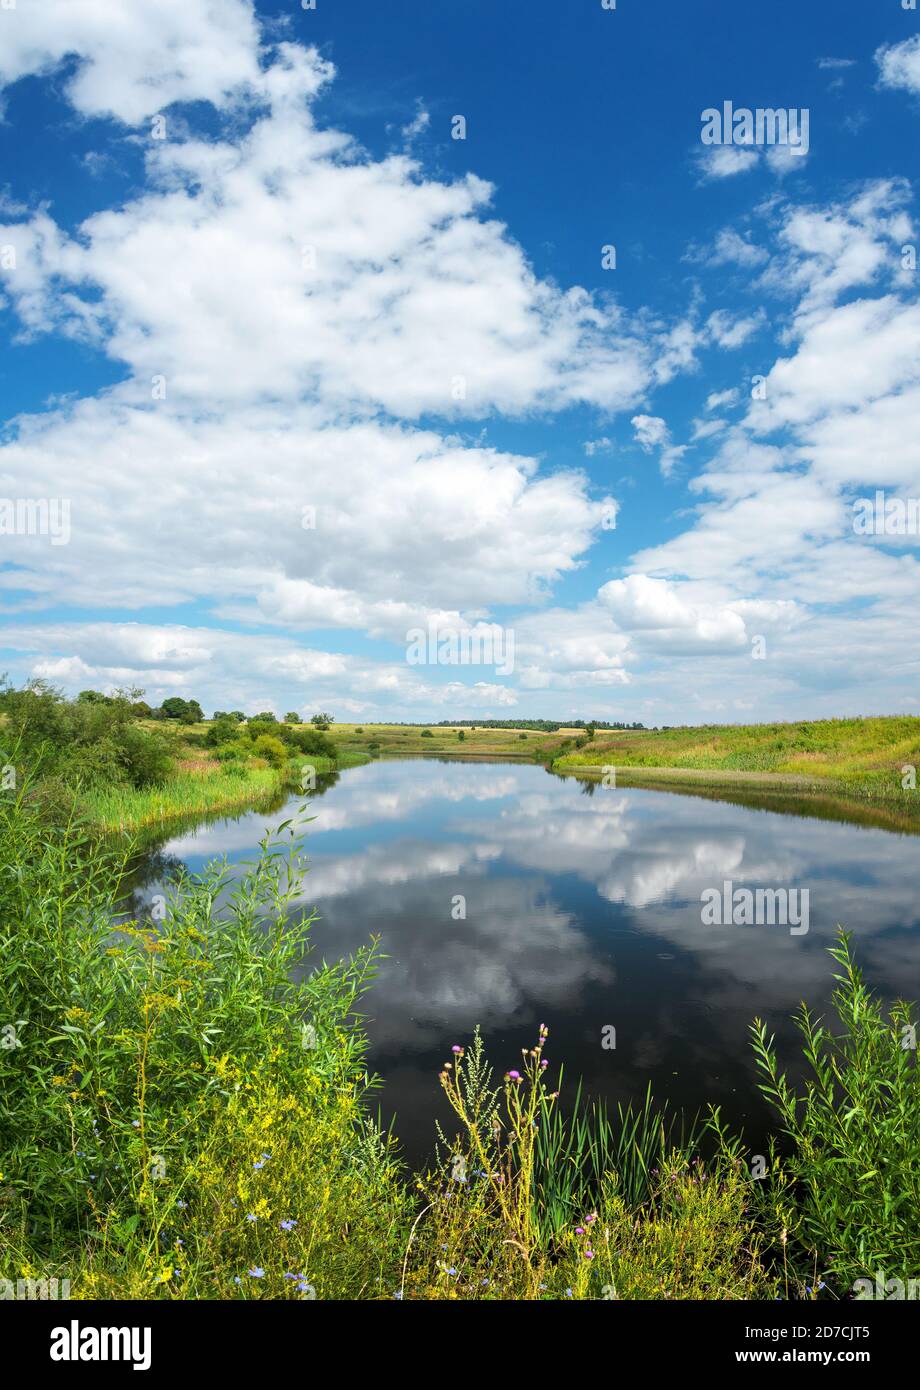 Sommerlandschaft mit ruhigen Fluss und schönen Wolken in blau Himmel Stockfoto